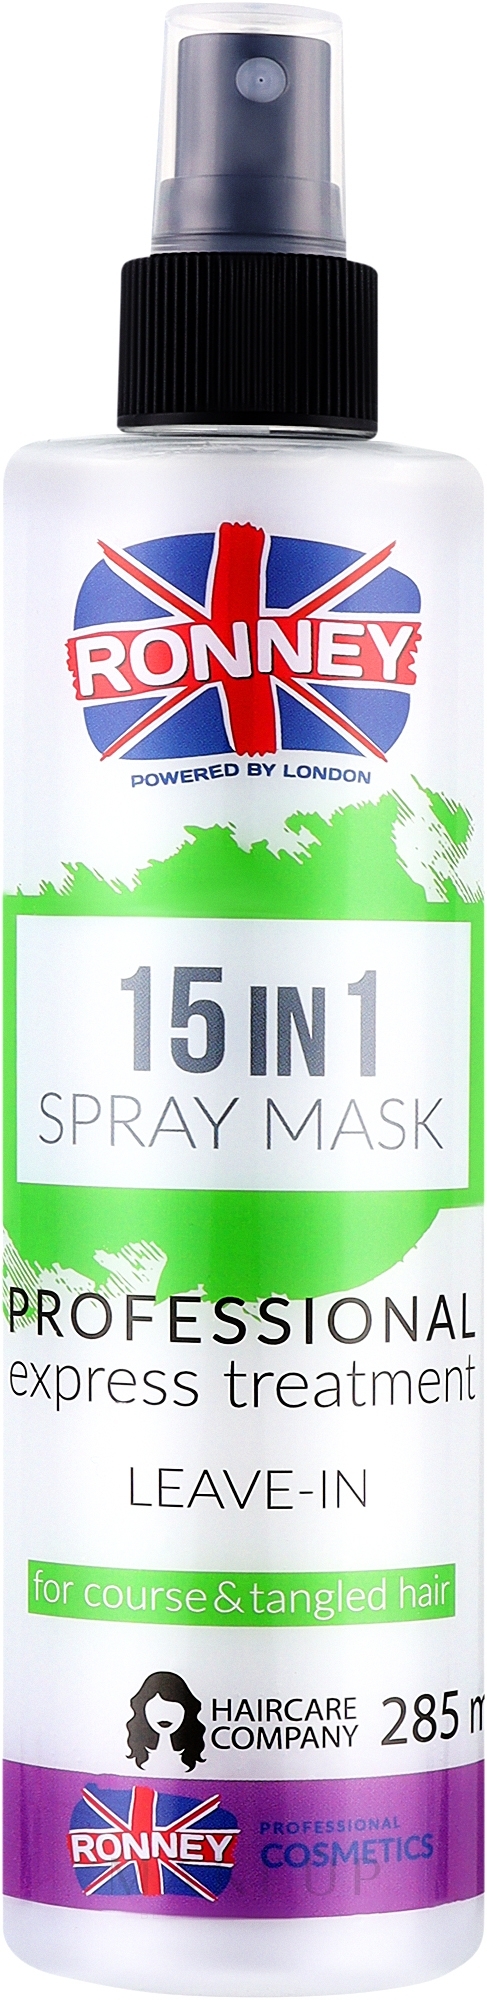 15in1 Haarspray für dickes und widerspenstiges Haar - Ronney 15in1 Spray Mask Professional Express Treatment Leave-In — Foto 285 ml